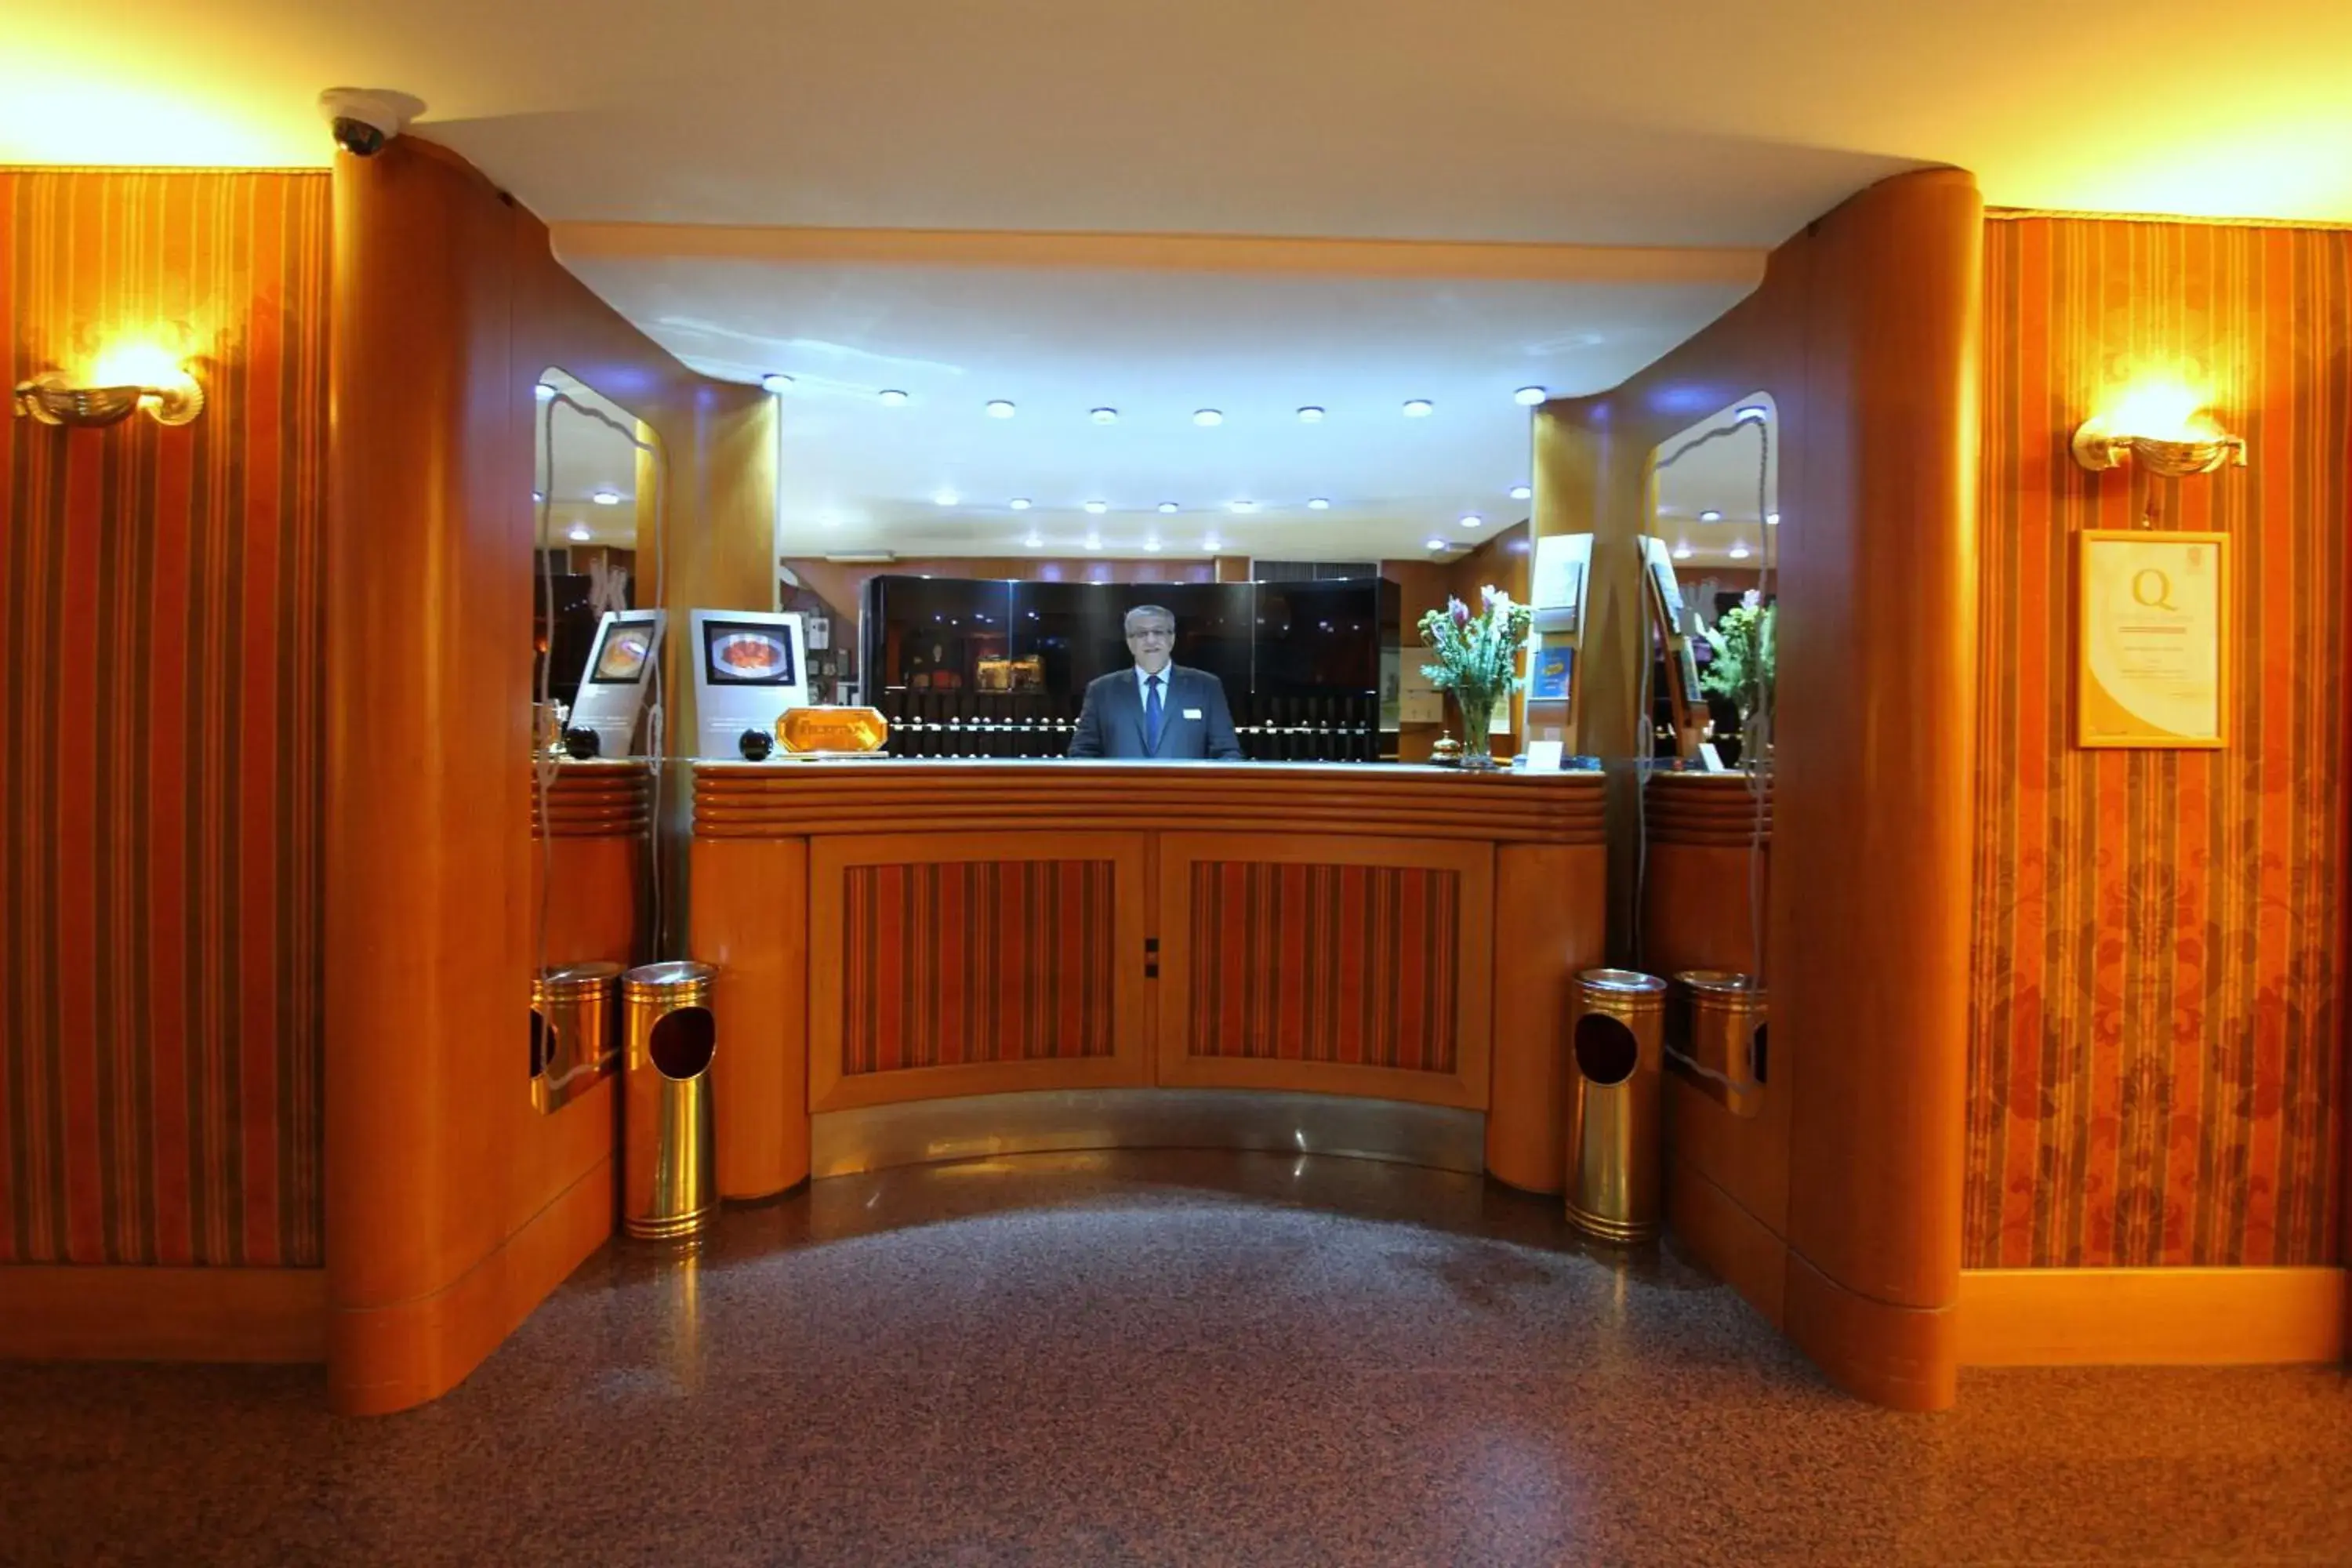 Lobby or reception in Hotel Cicolella